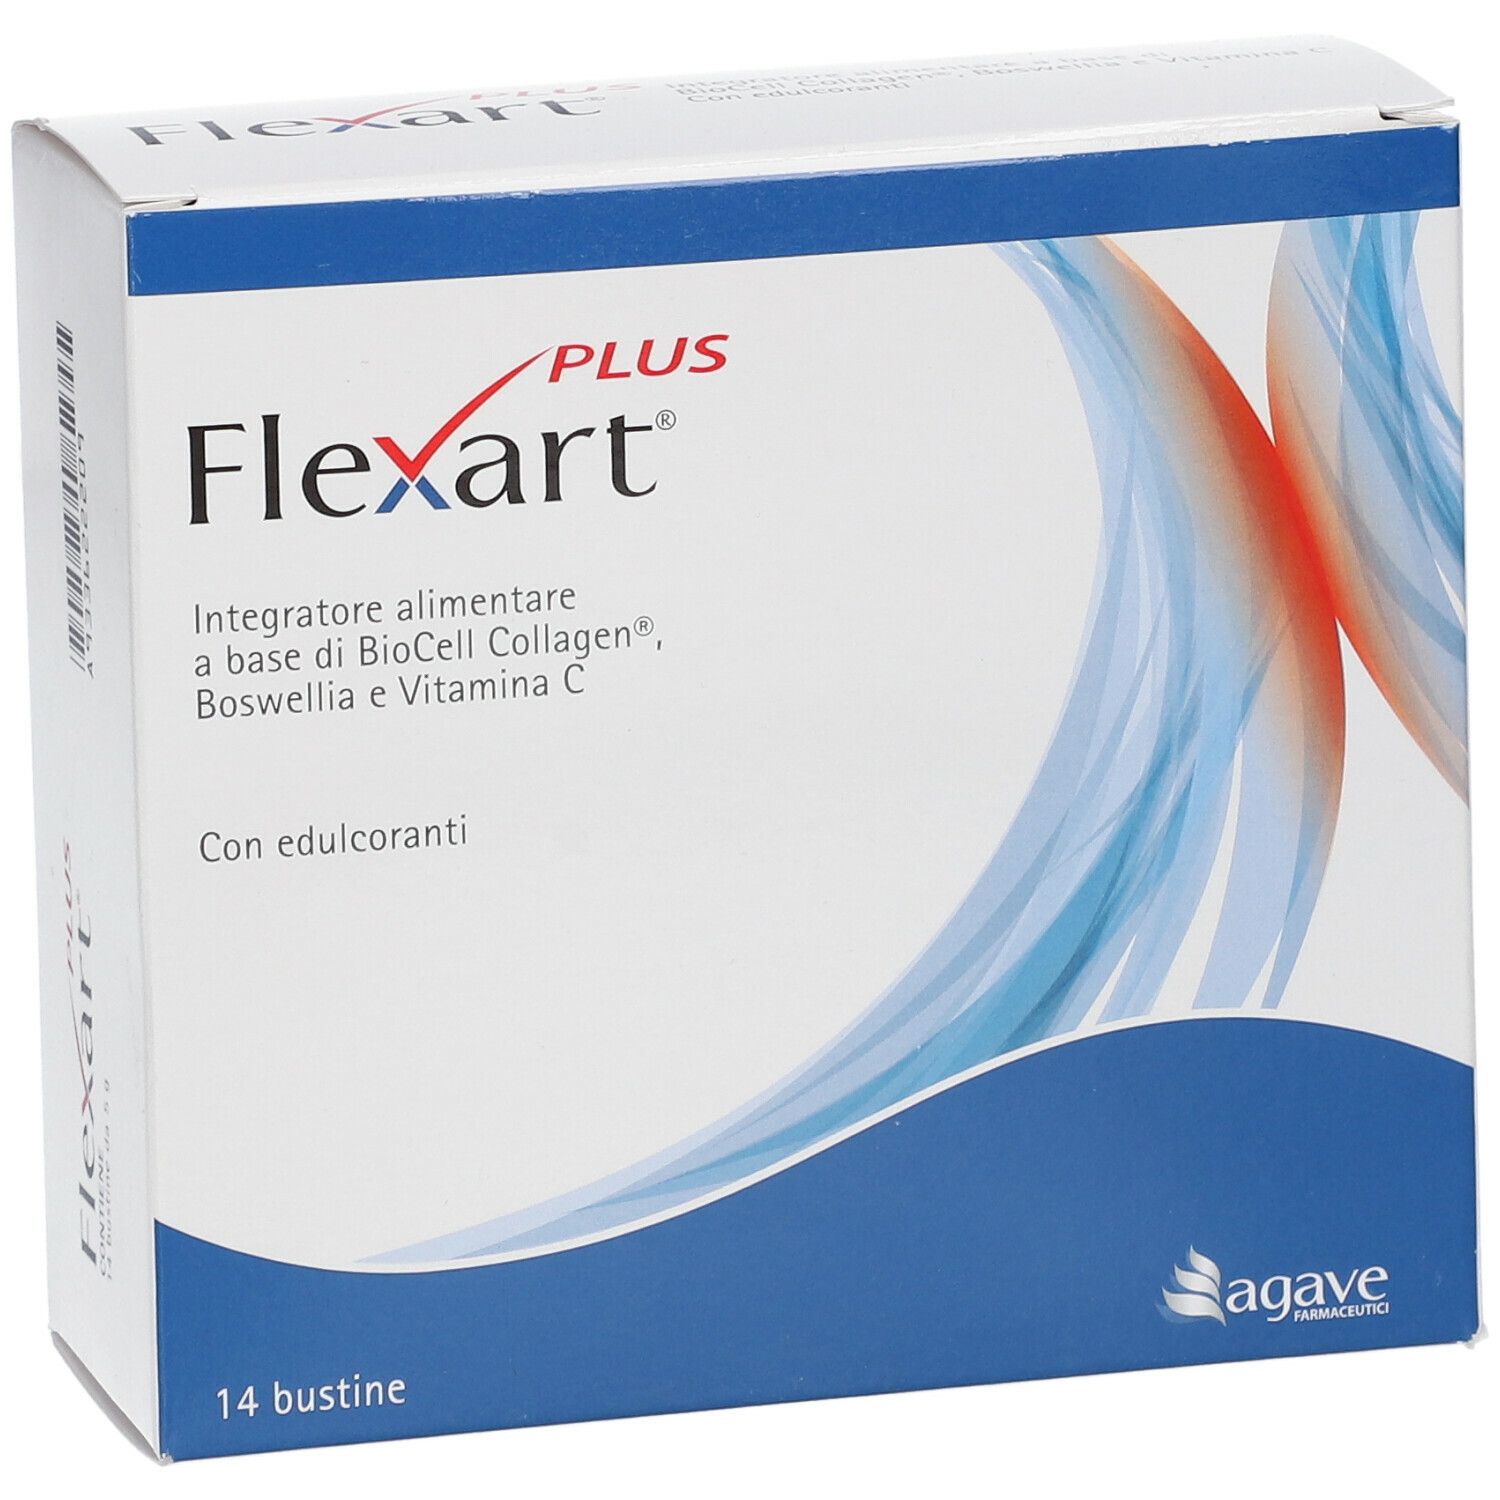 flexart plus è mutuabile